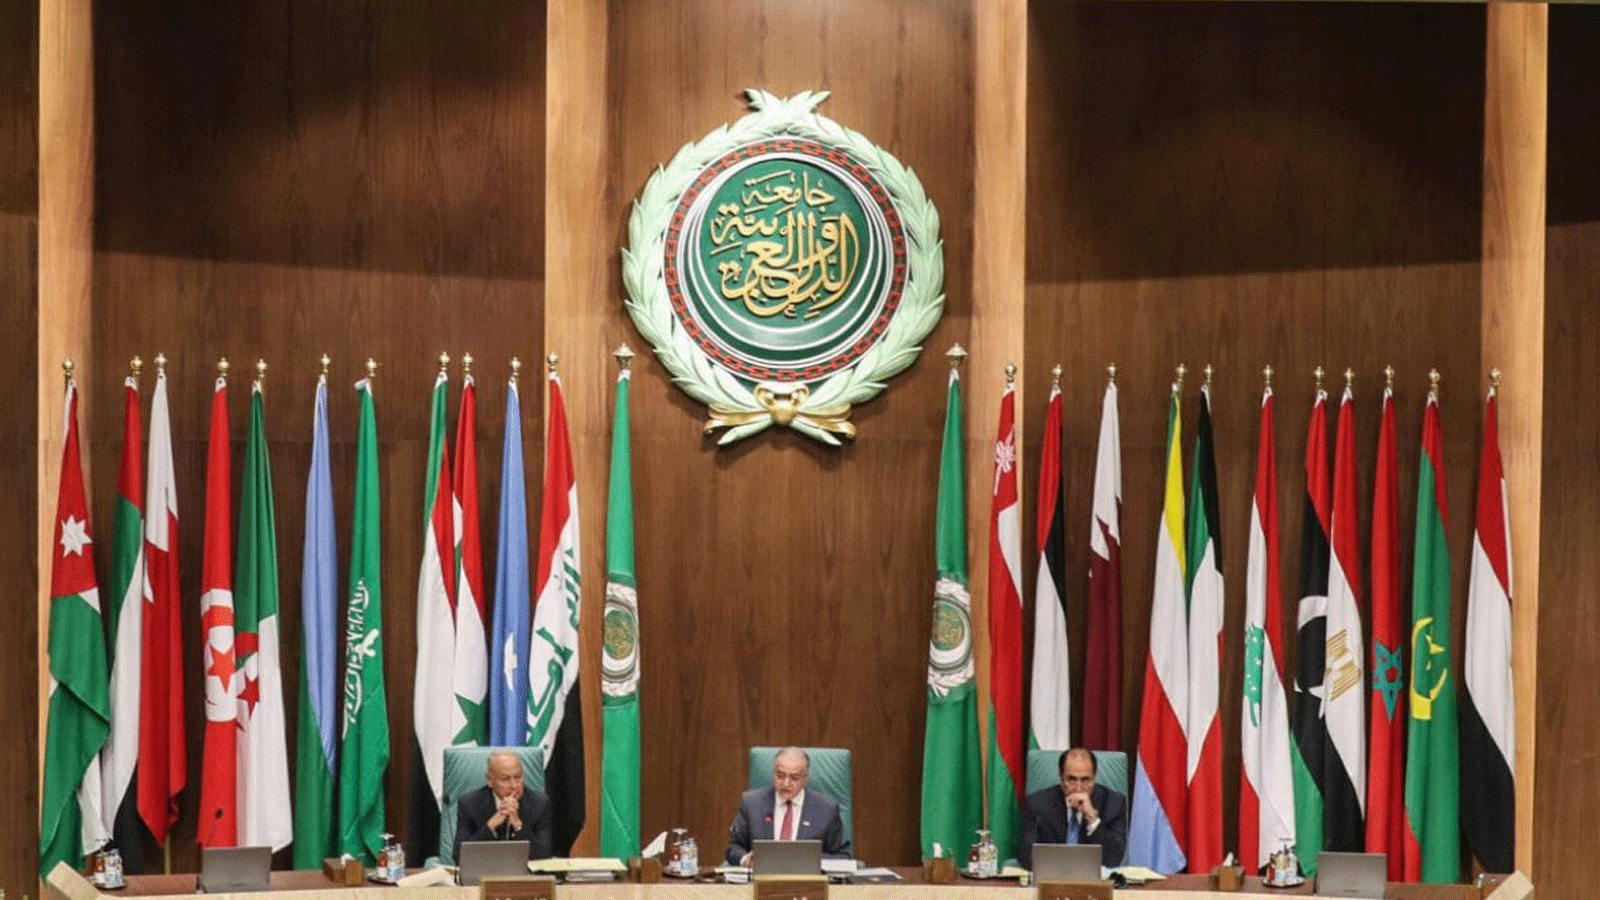 الاجتماع السنوي رقم 153 لوزراء الخارجية العرب في مقر جامعة الدول العربية بالعاصمة المصرية القاهرة في 4 آذار/مارس 2020